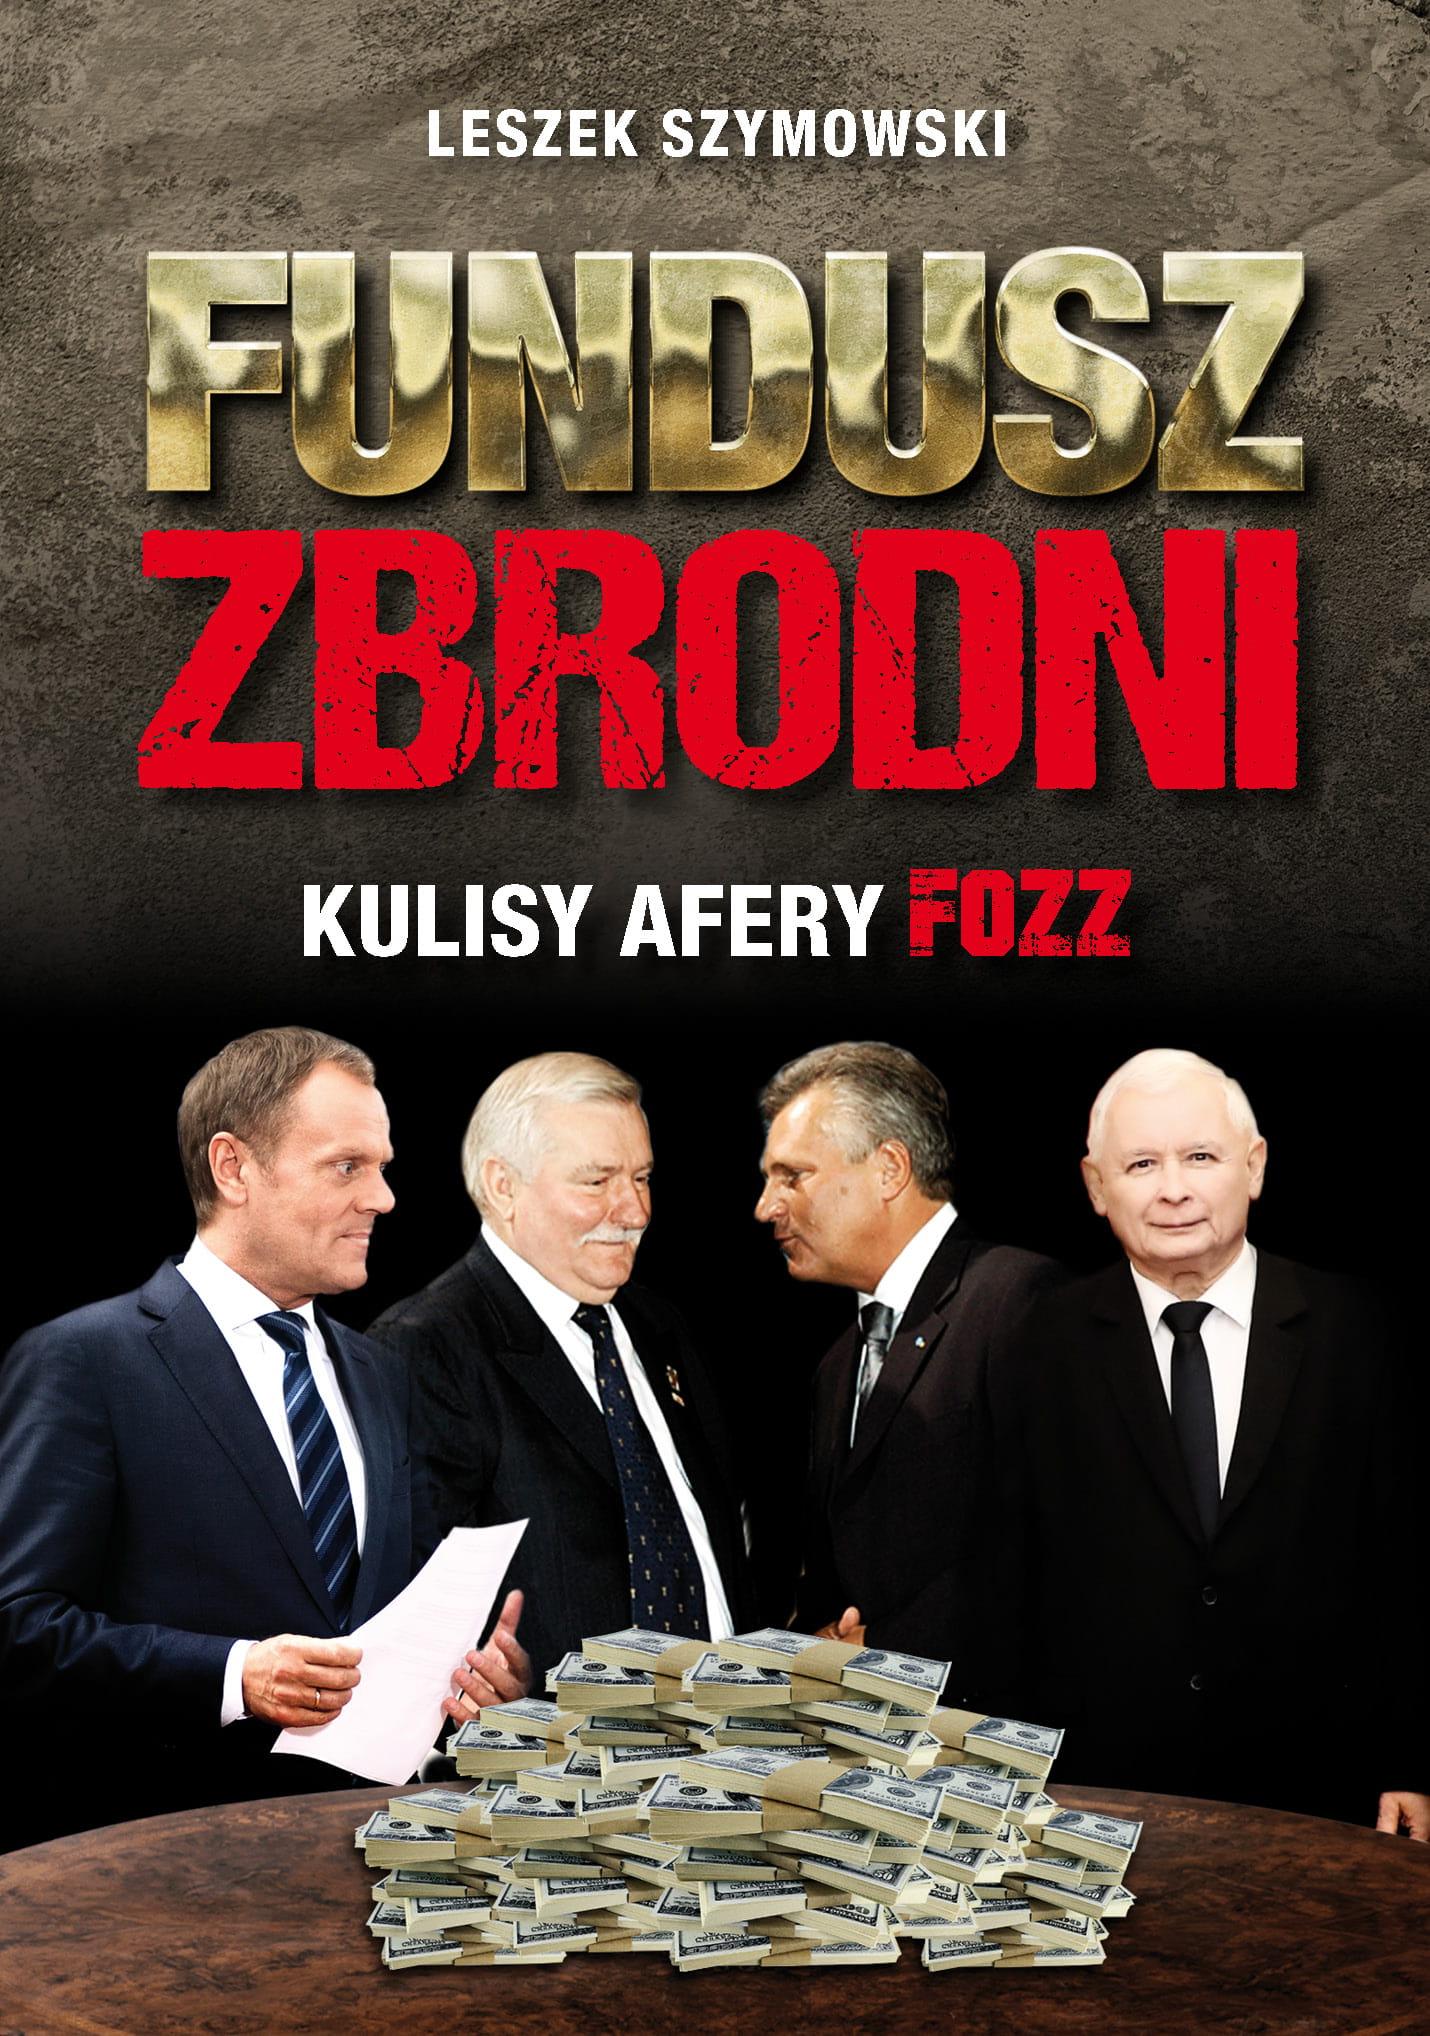 Fundusz zbrodni Kulisy afery FOZZ (L.Szymowski)